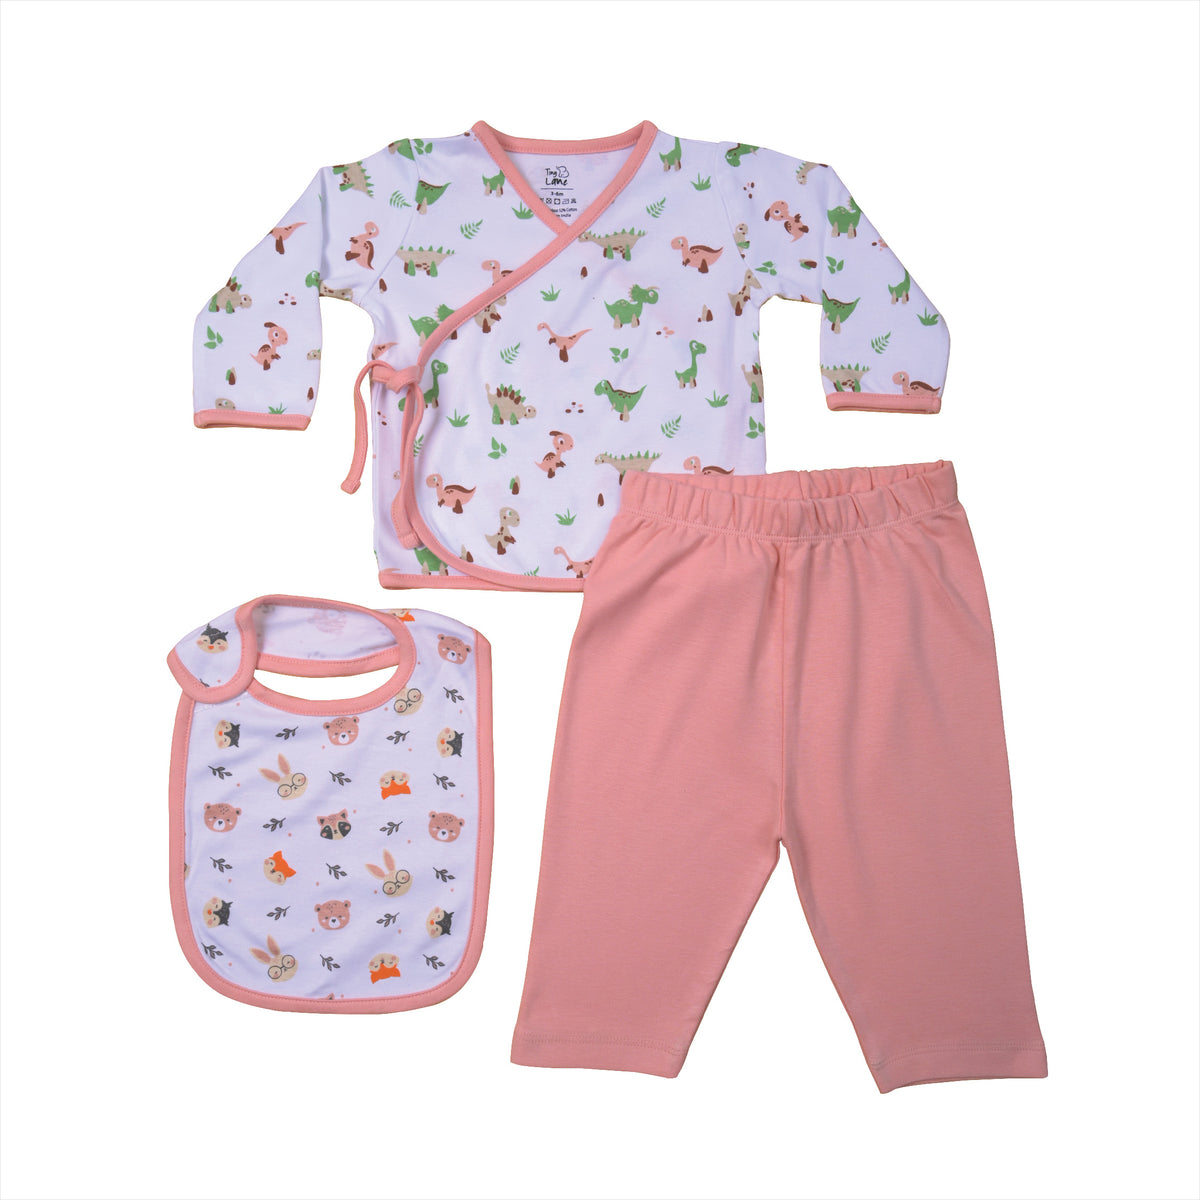 Giggle Baby Clothing Set